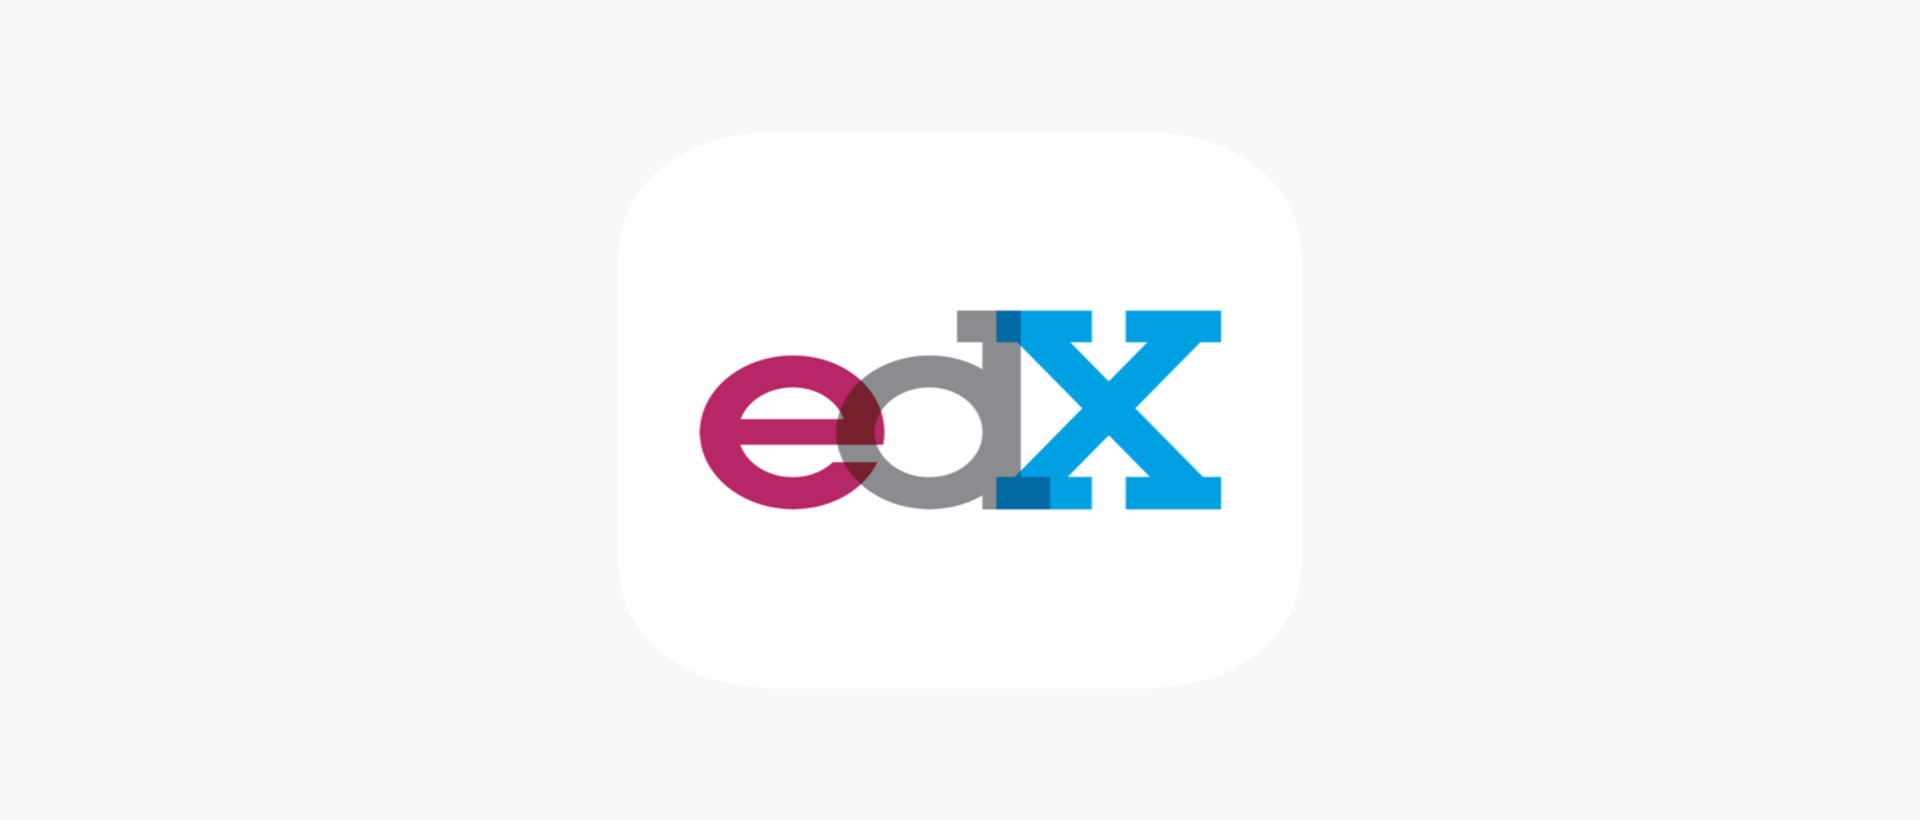 Chơi edX lớp học trực tuyến - MOOCs giáo dục trên máy tính/PC cùng giả lập NoxPlayer